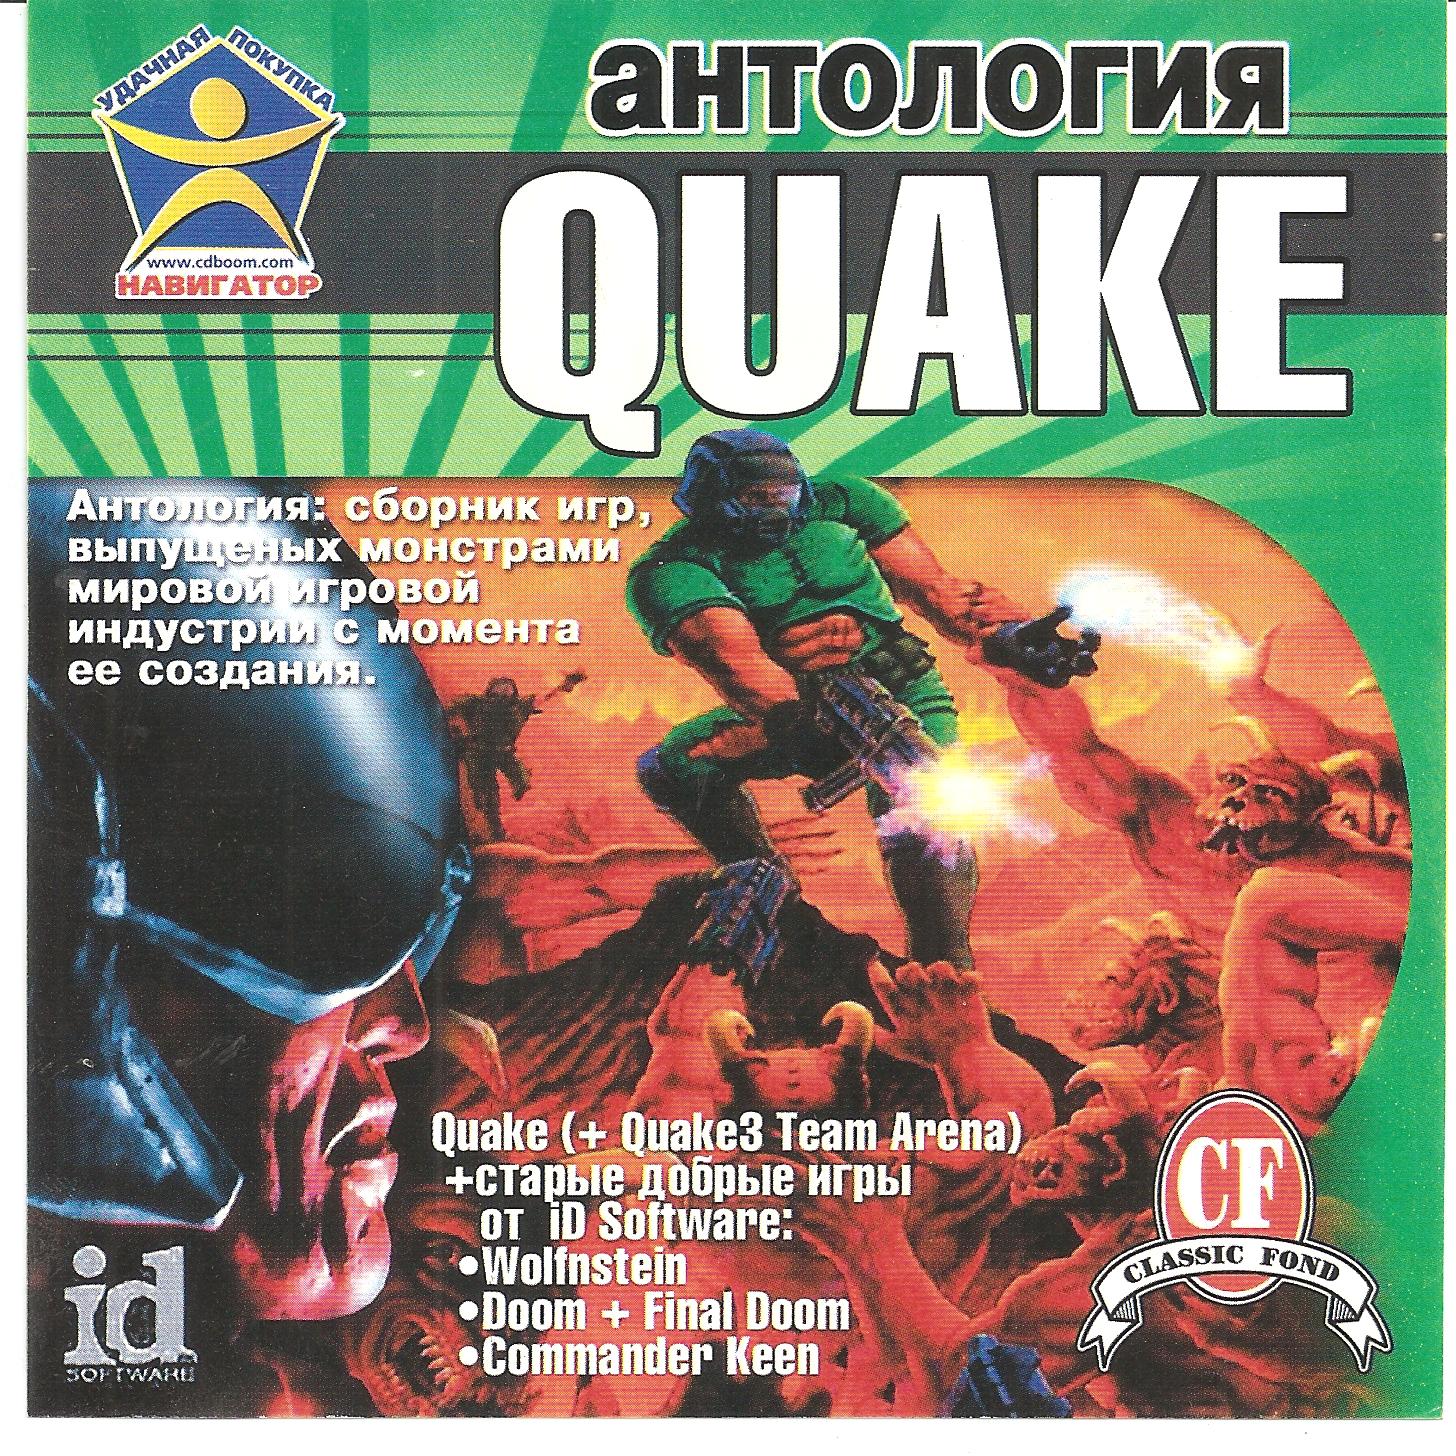 Сборник старых игр. Антология игр. Quake антология. Антология сборник игр. Quake 3 антология.